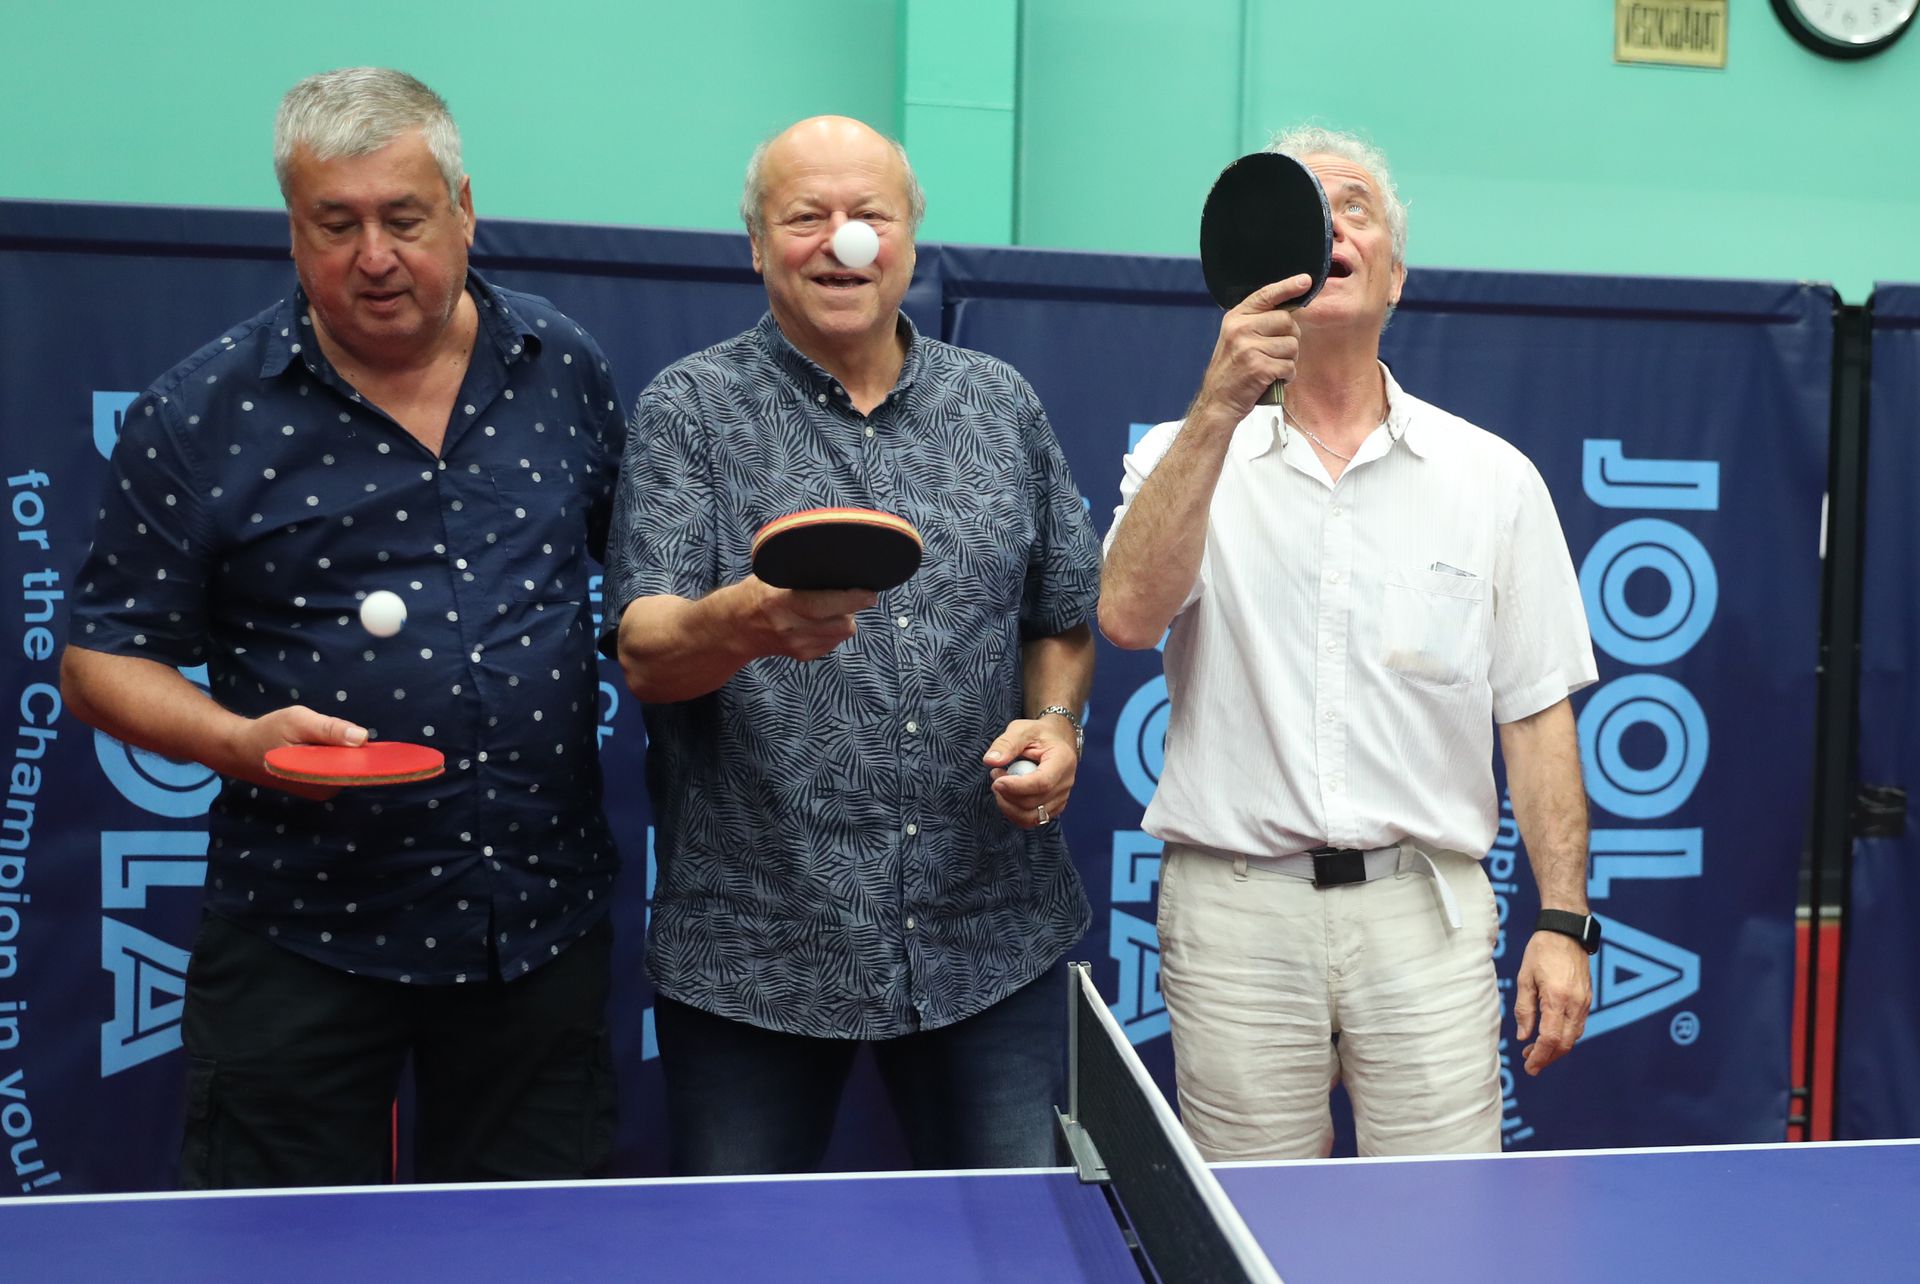 Nyerő hármas: A három világbajnok, Klampár Tibor (balról), Jónyer és Gergely még mindig jól bánik a pingponglabdával.../ Fotó: Zsolnai Péter